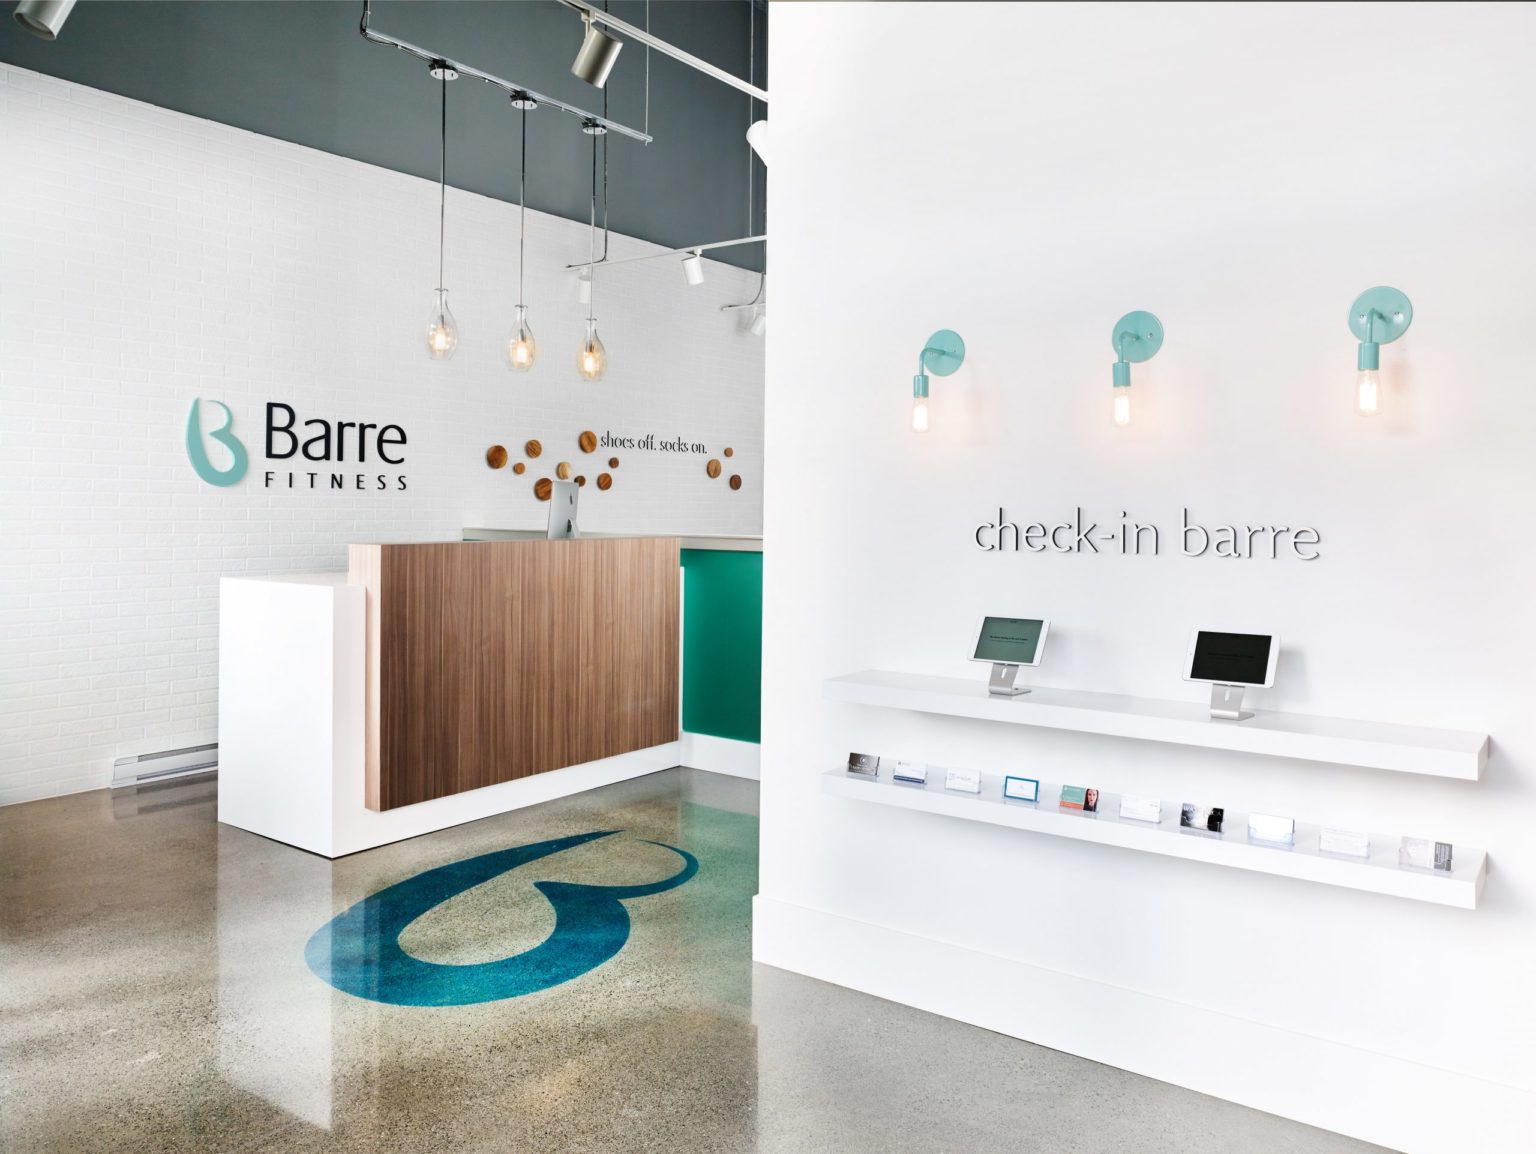 Project: Barre Fitness Surrey Interior Design & Architecture in Surrey BC Canada